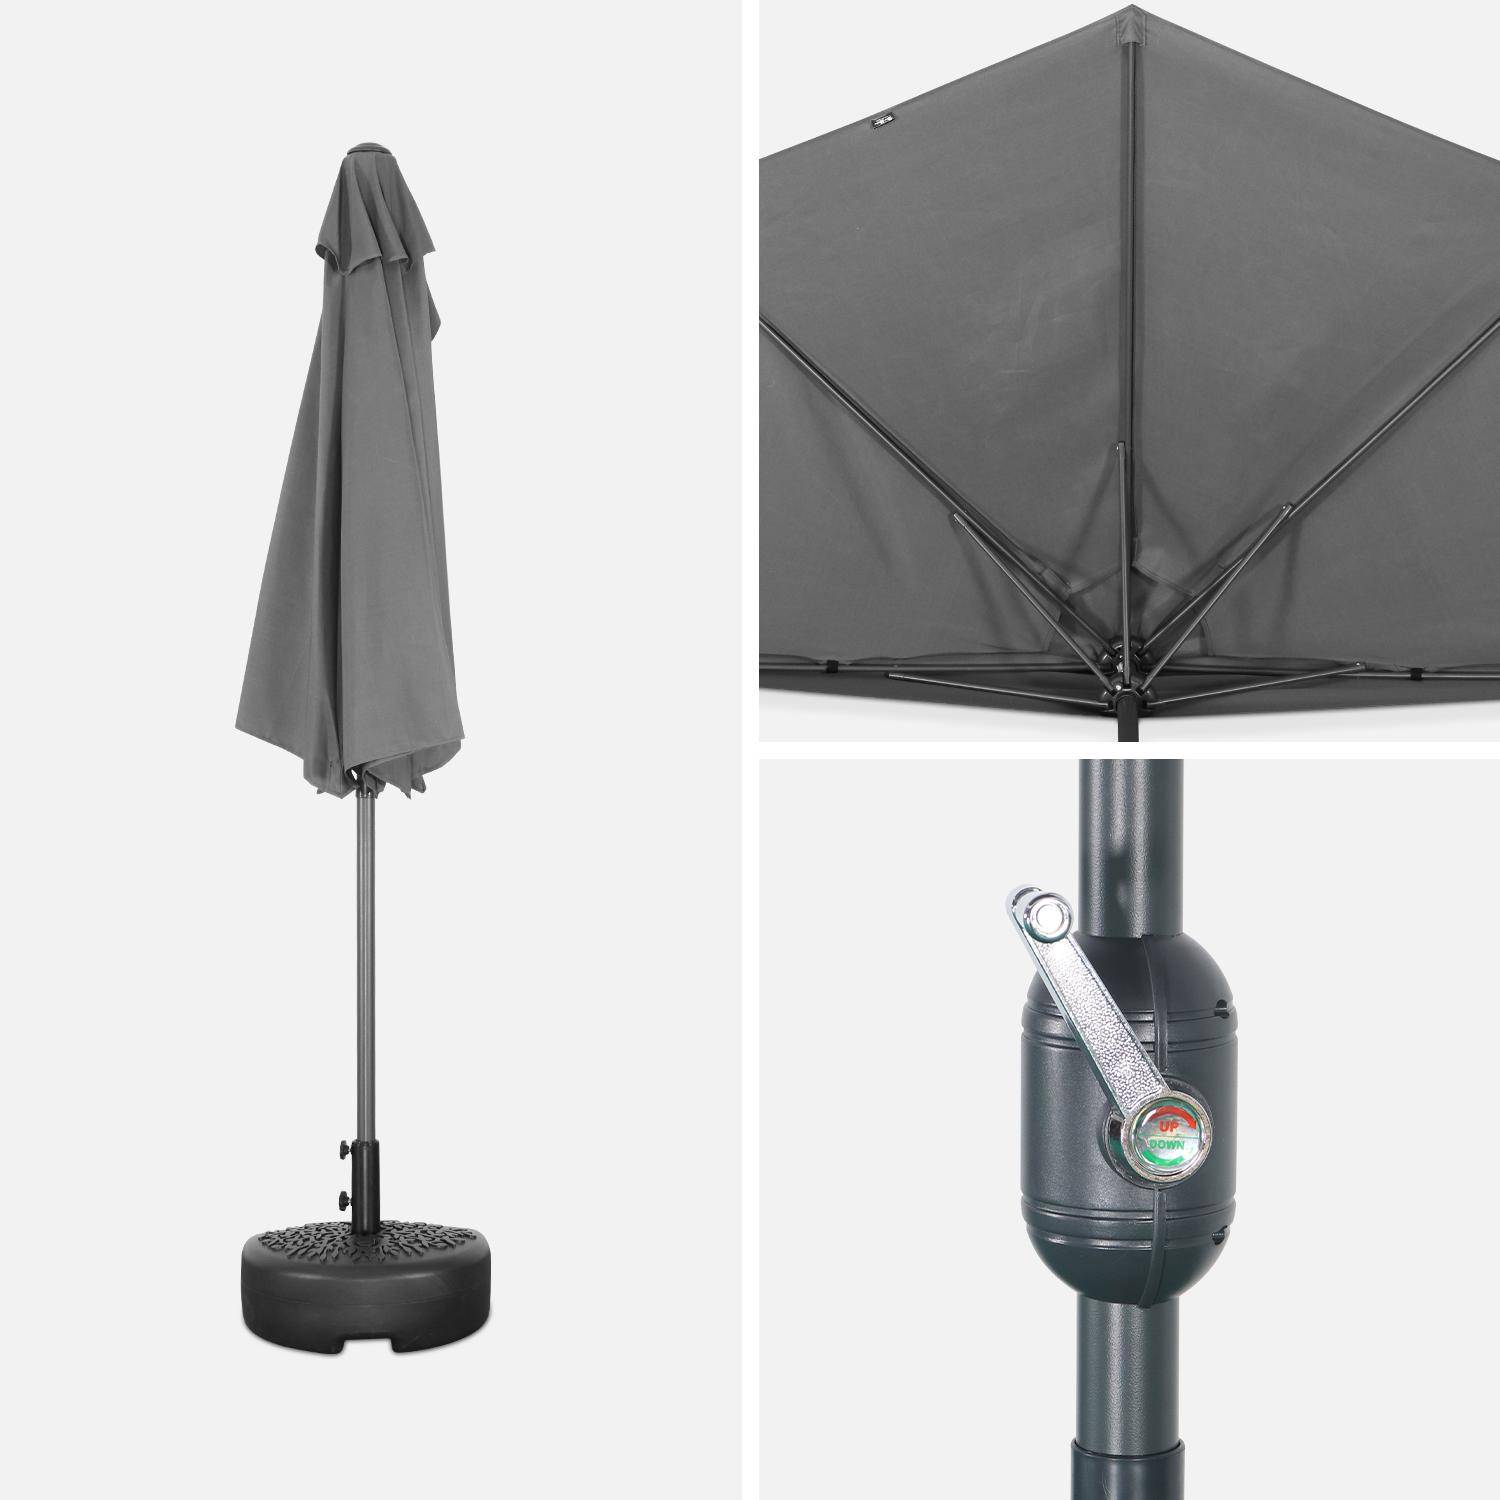  Parasol para balcón Ø250cm - CALVI - Medio parasol recto, mástil de aluminio con manivela, tejido gris Photo4